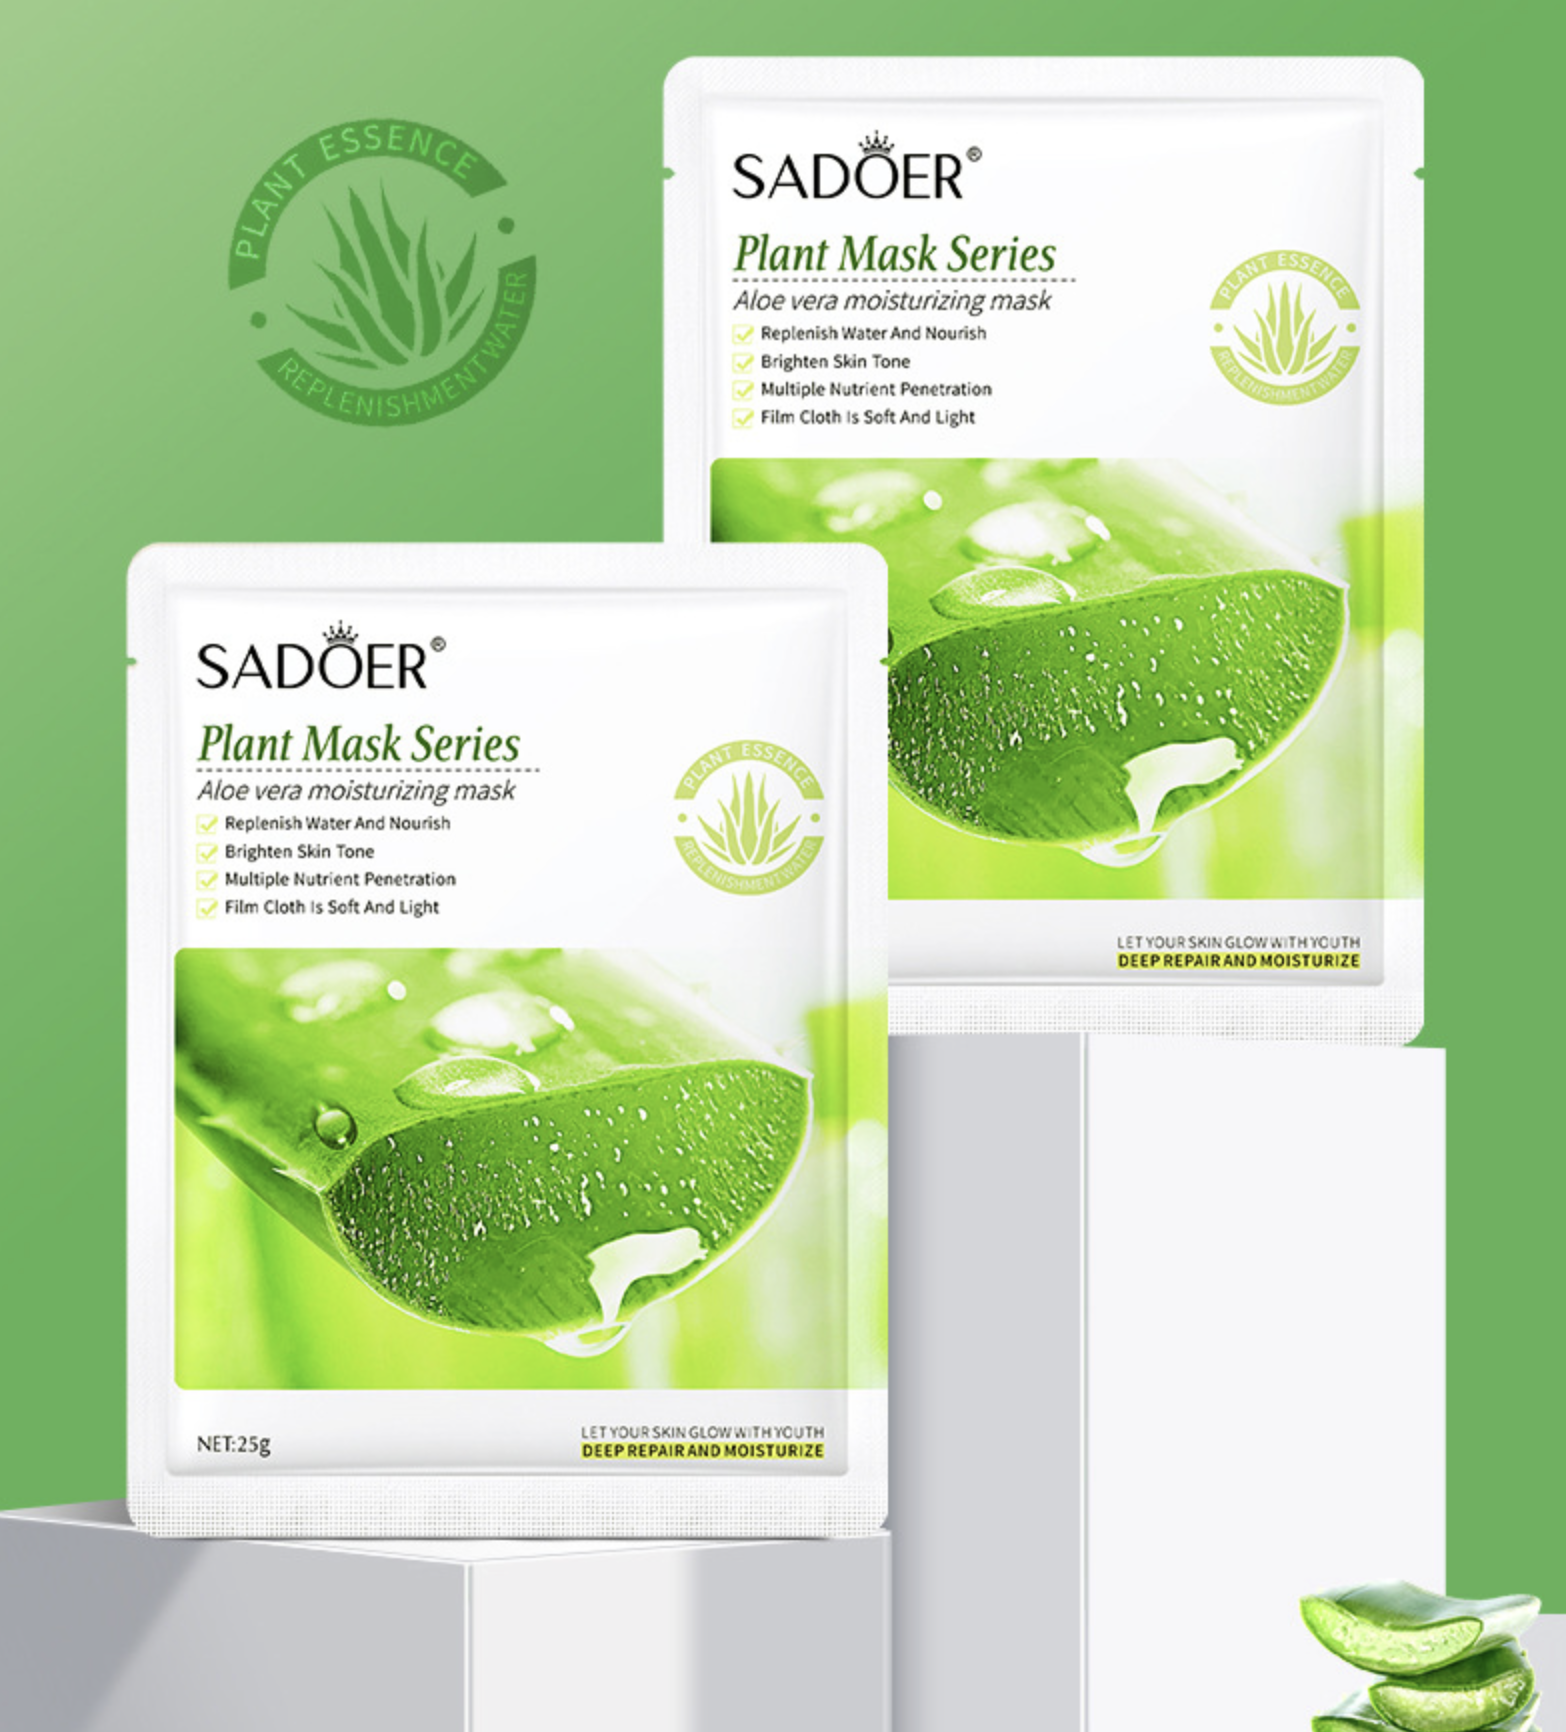 Sadoer vitamin c. Тканевые маски sadoer. Sadoer маска для лица тканевая. Sadoer восстанавливающая тканевая маска для лица с олигопептидам-1.